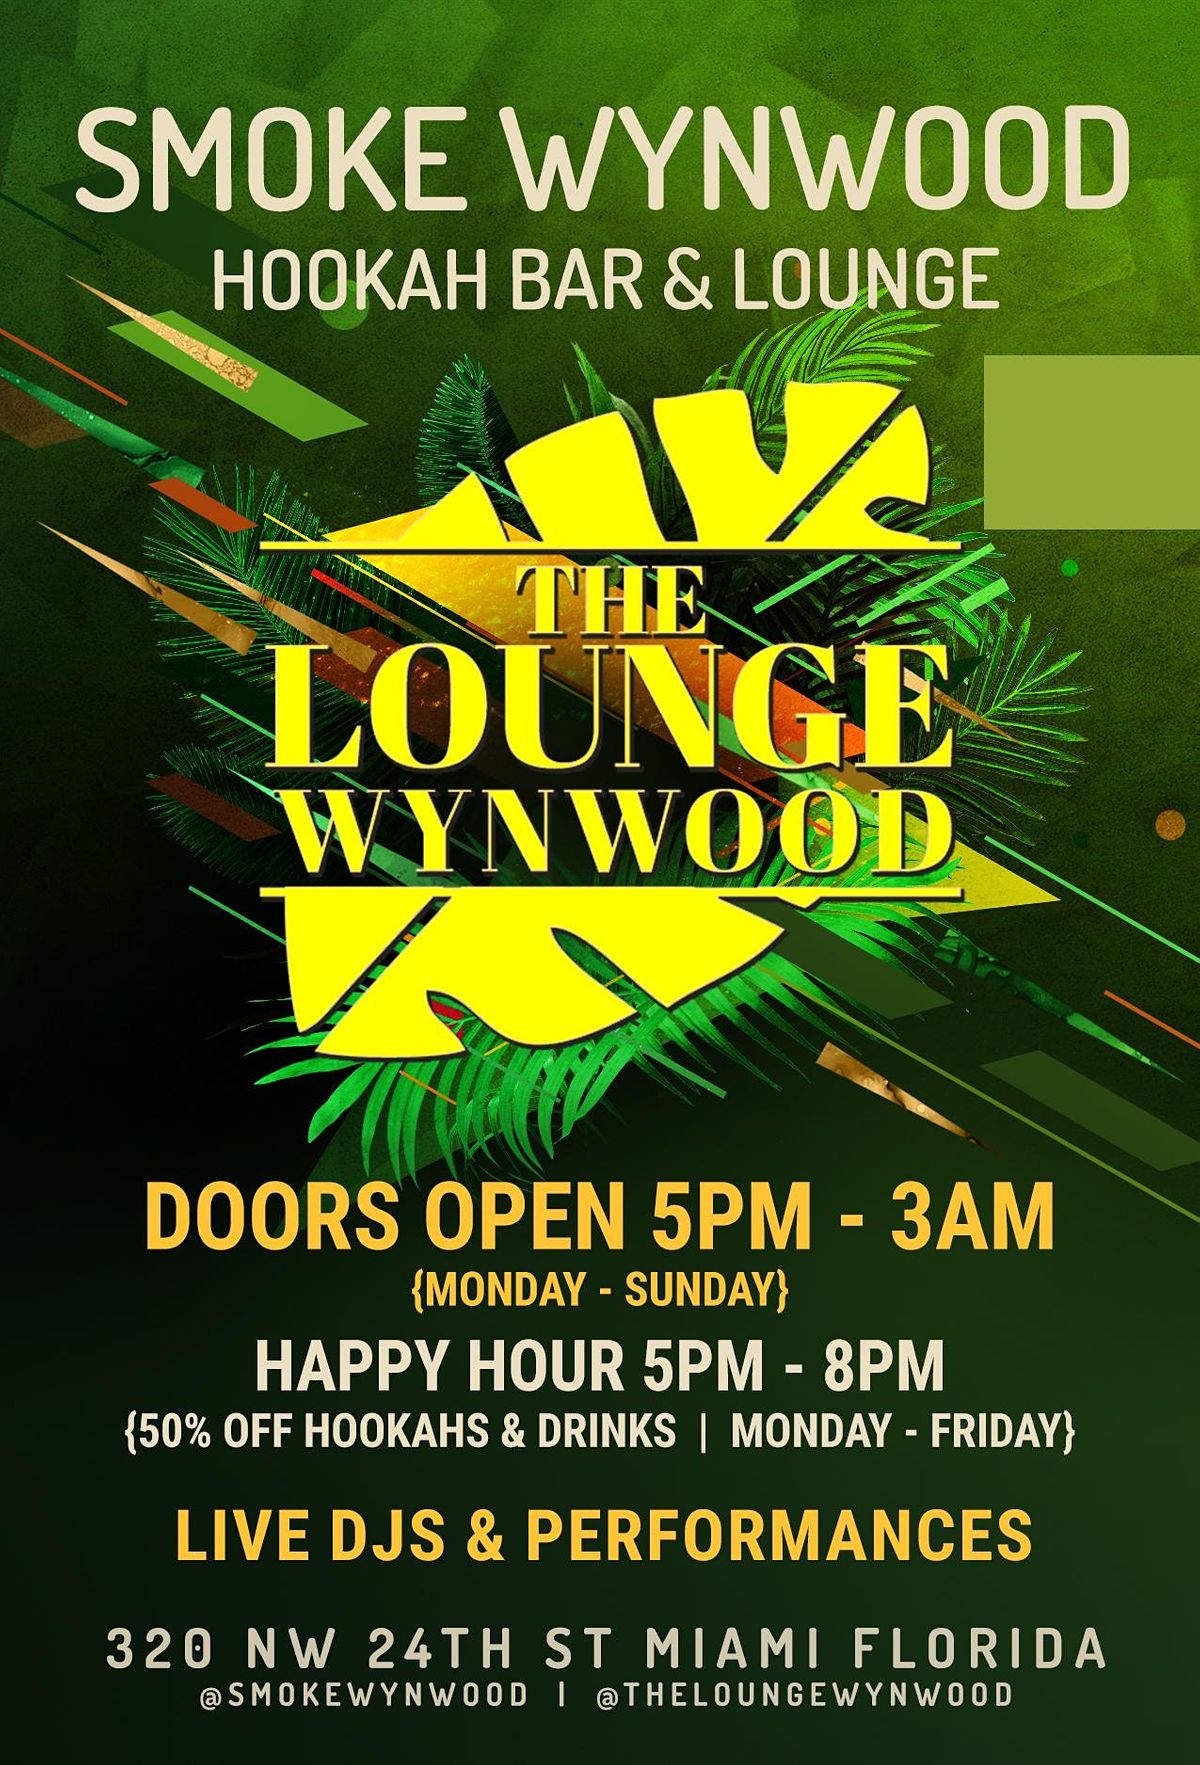 Weekly Party at Smoke Wynwood Hookah Bar & Lounge